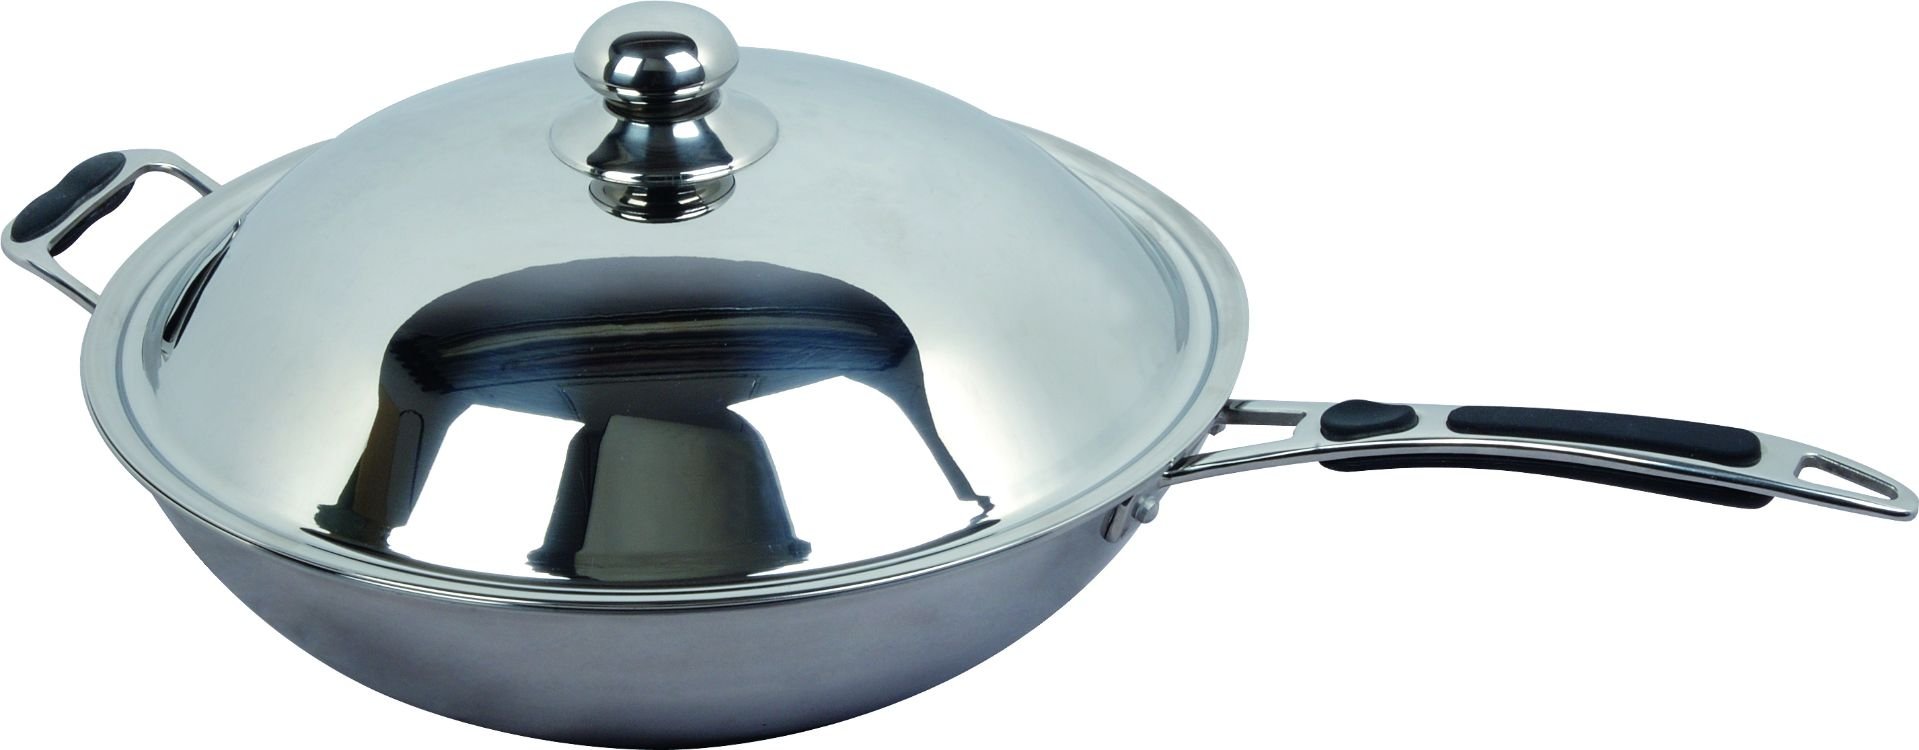 Pentola wok per piastra induzione (WOK) – Cheftek